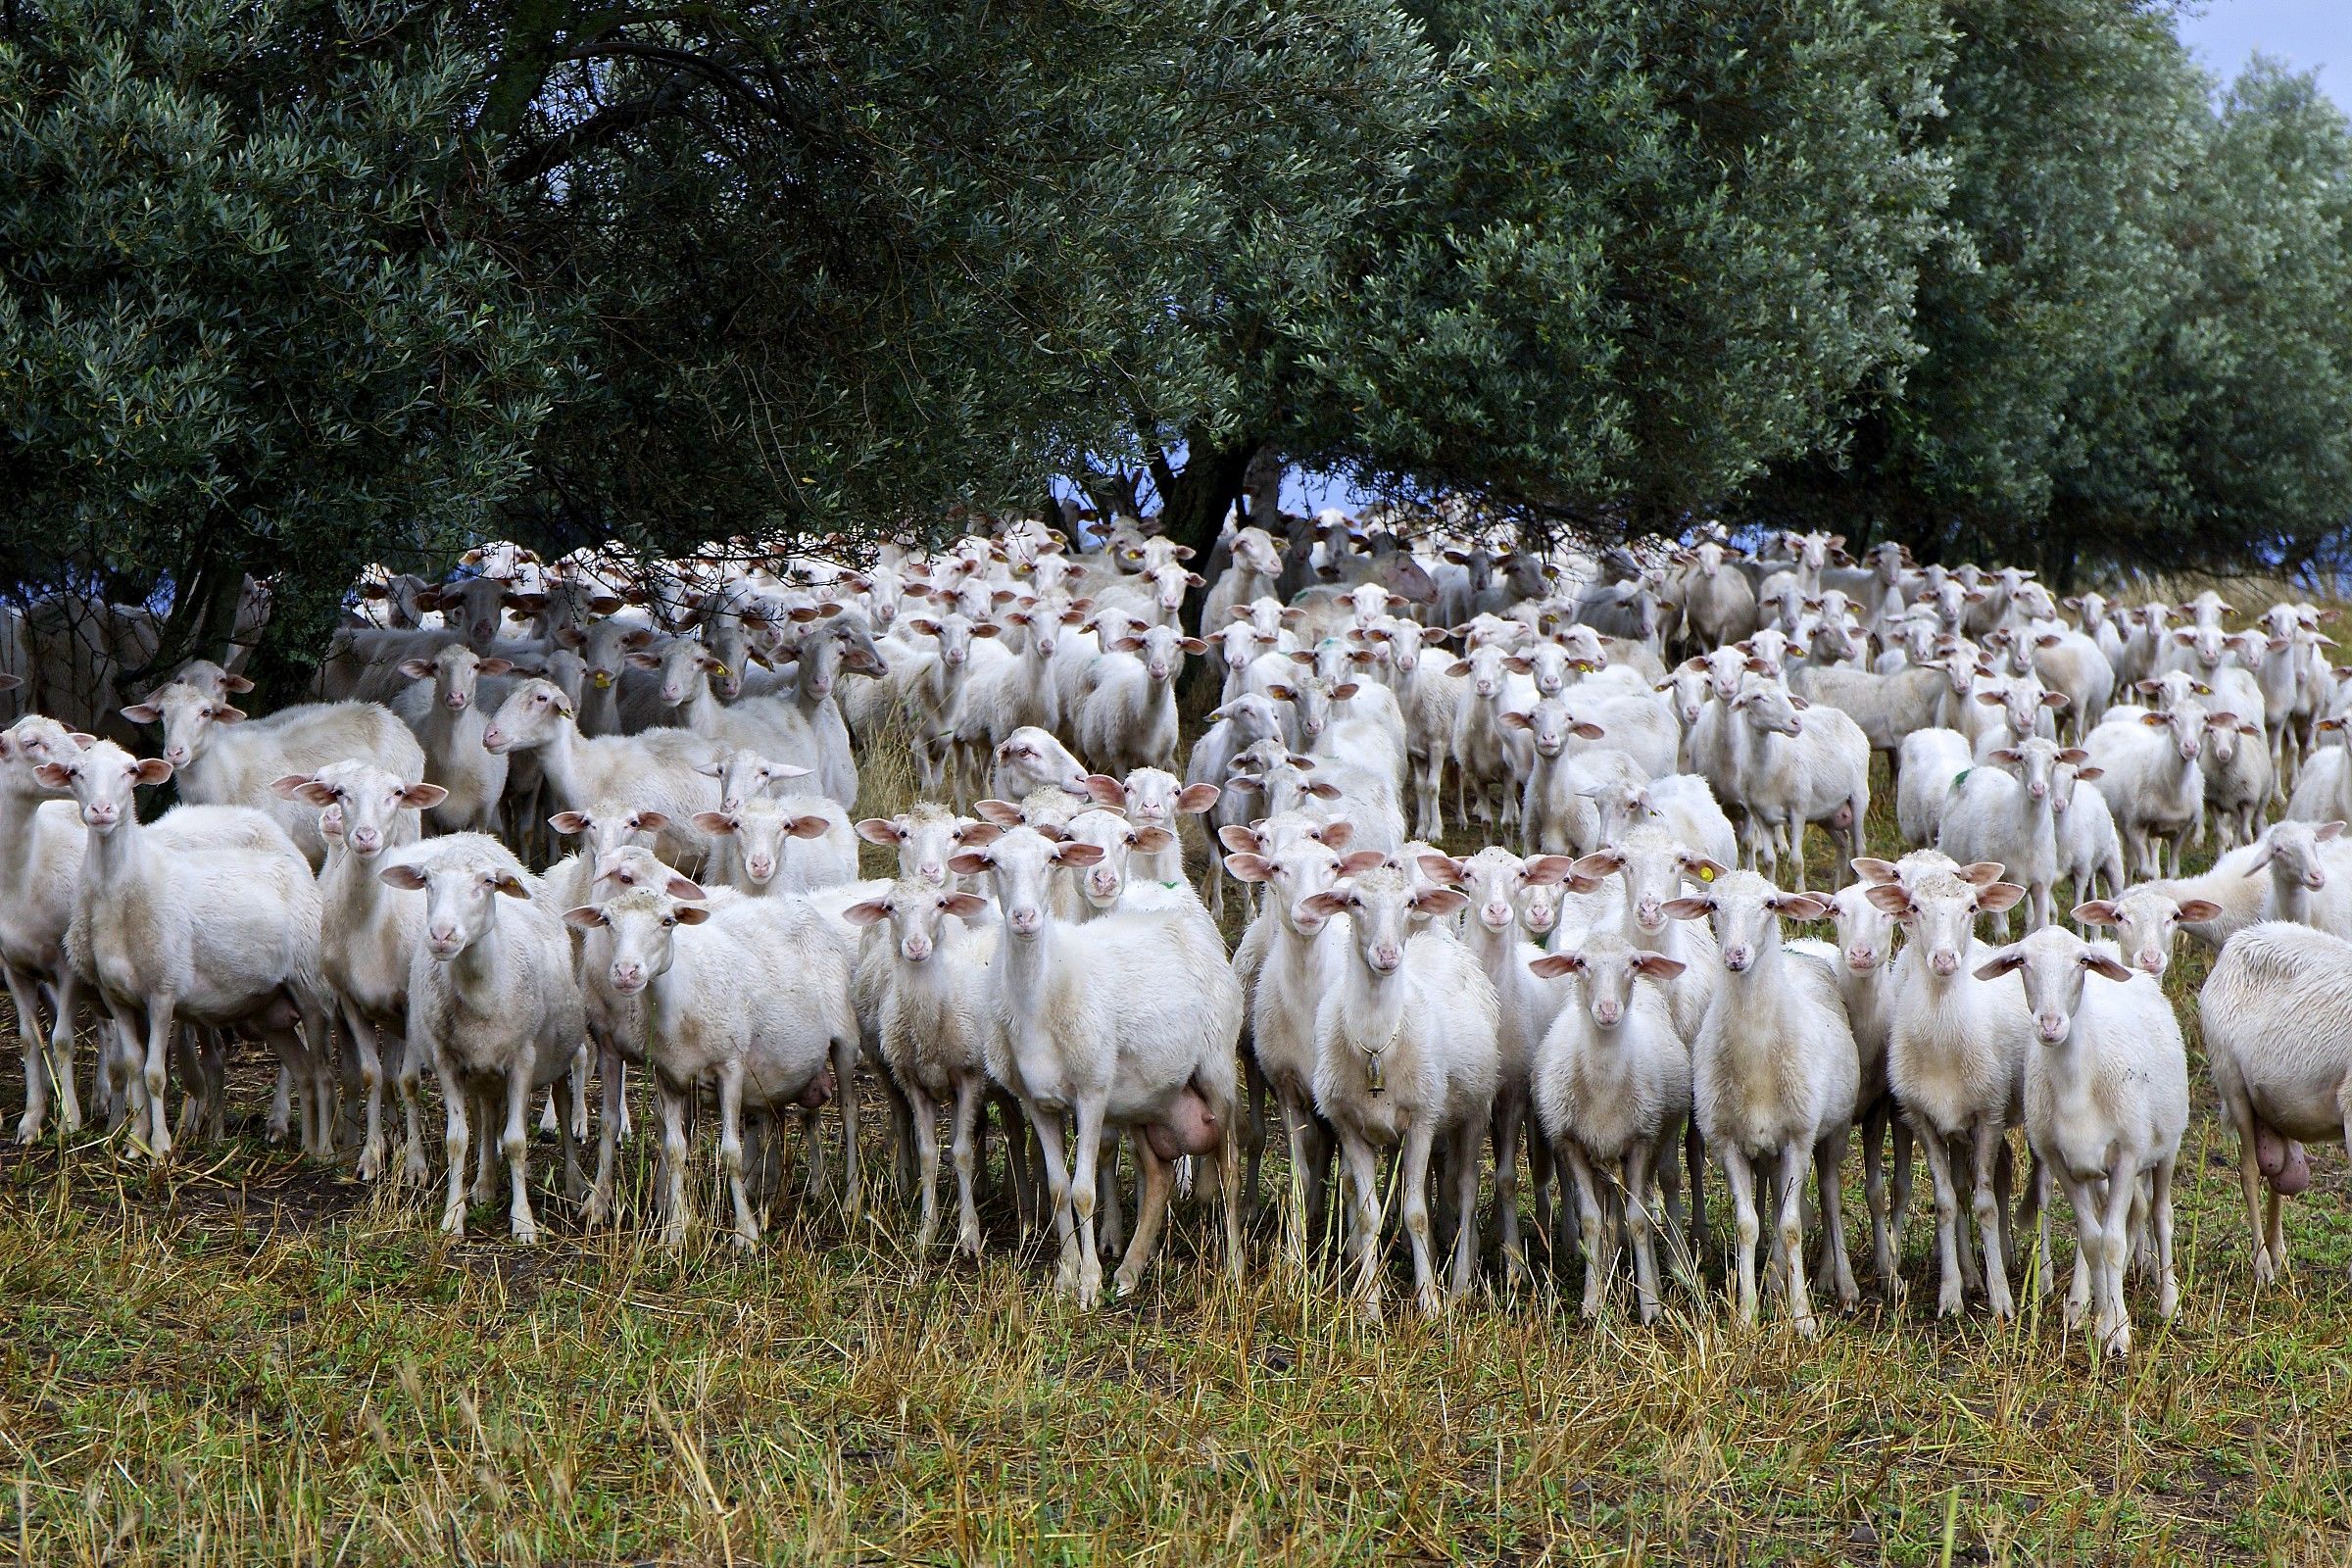 le pecore ci guardano.....